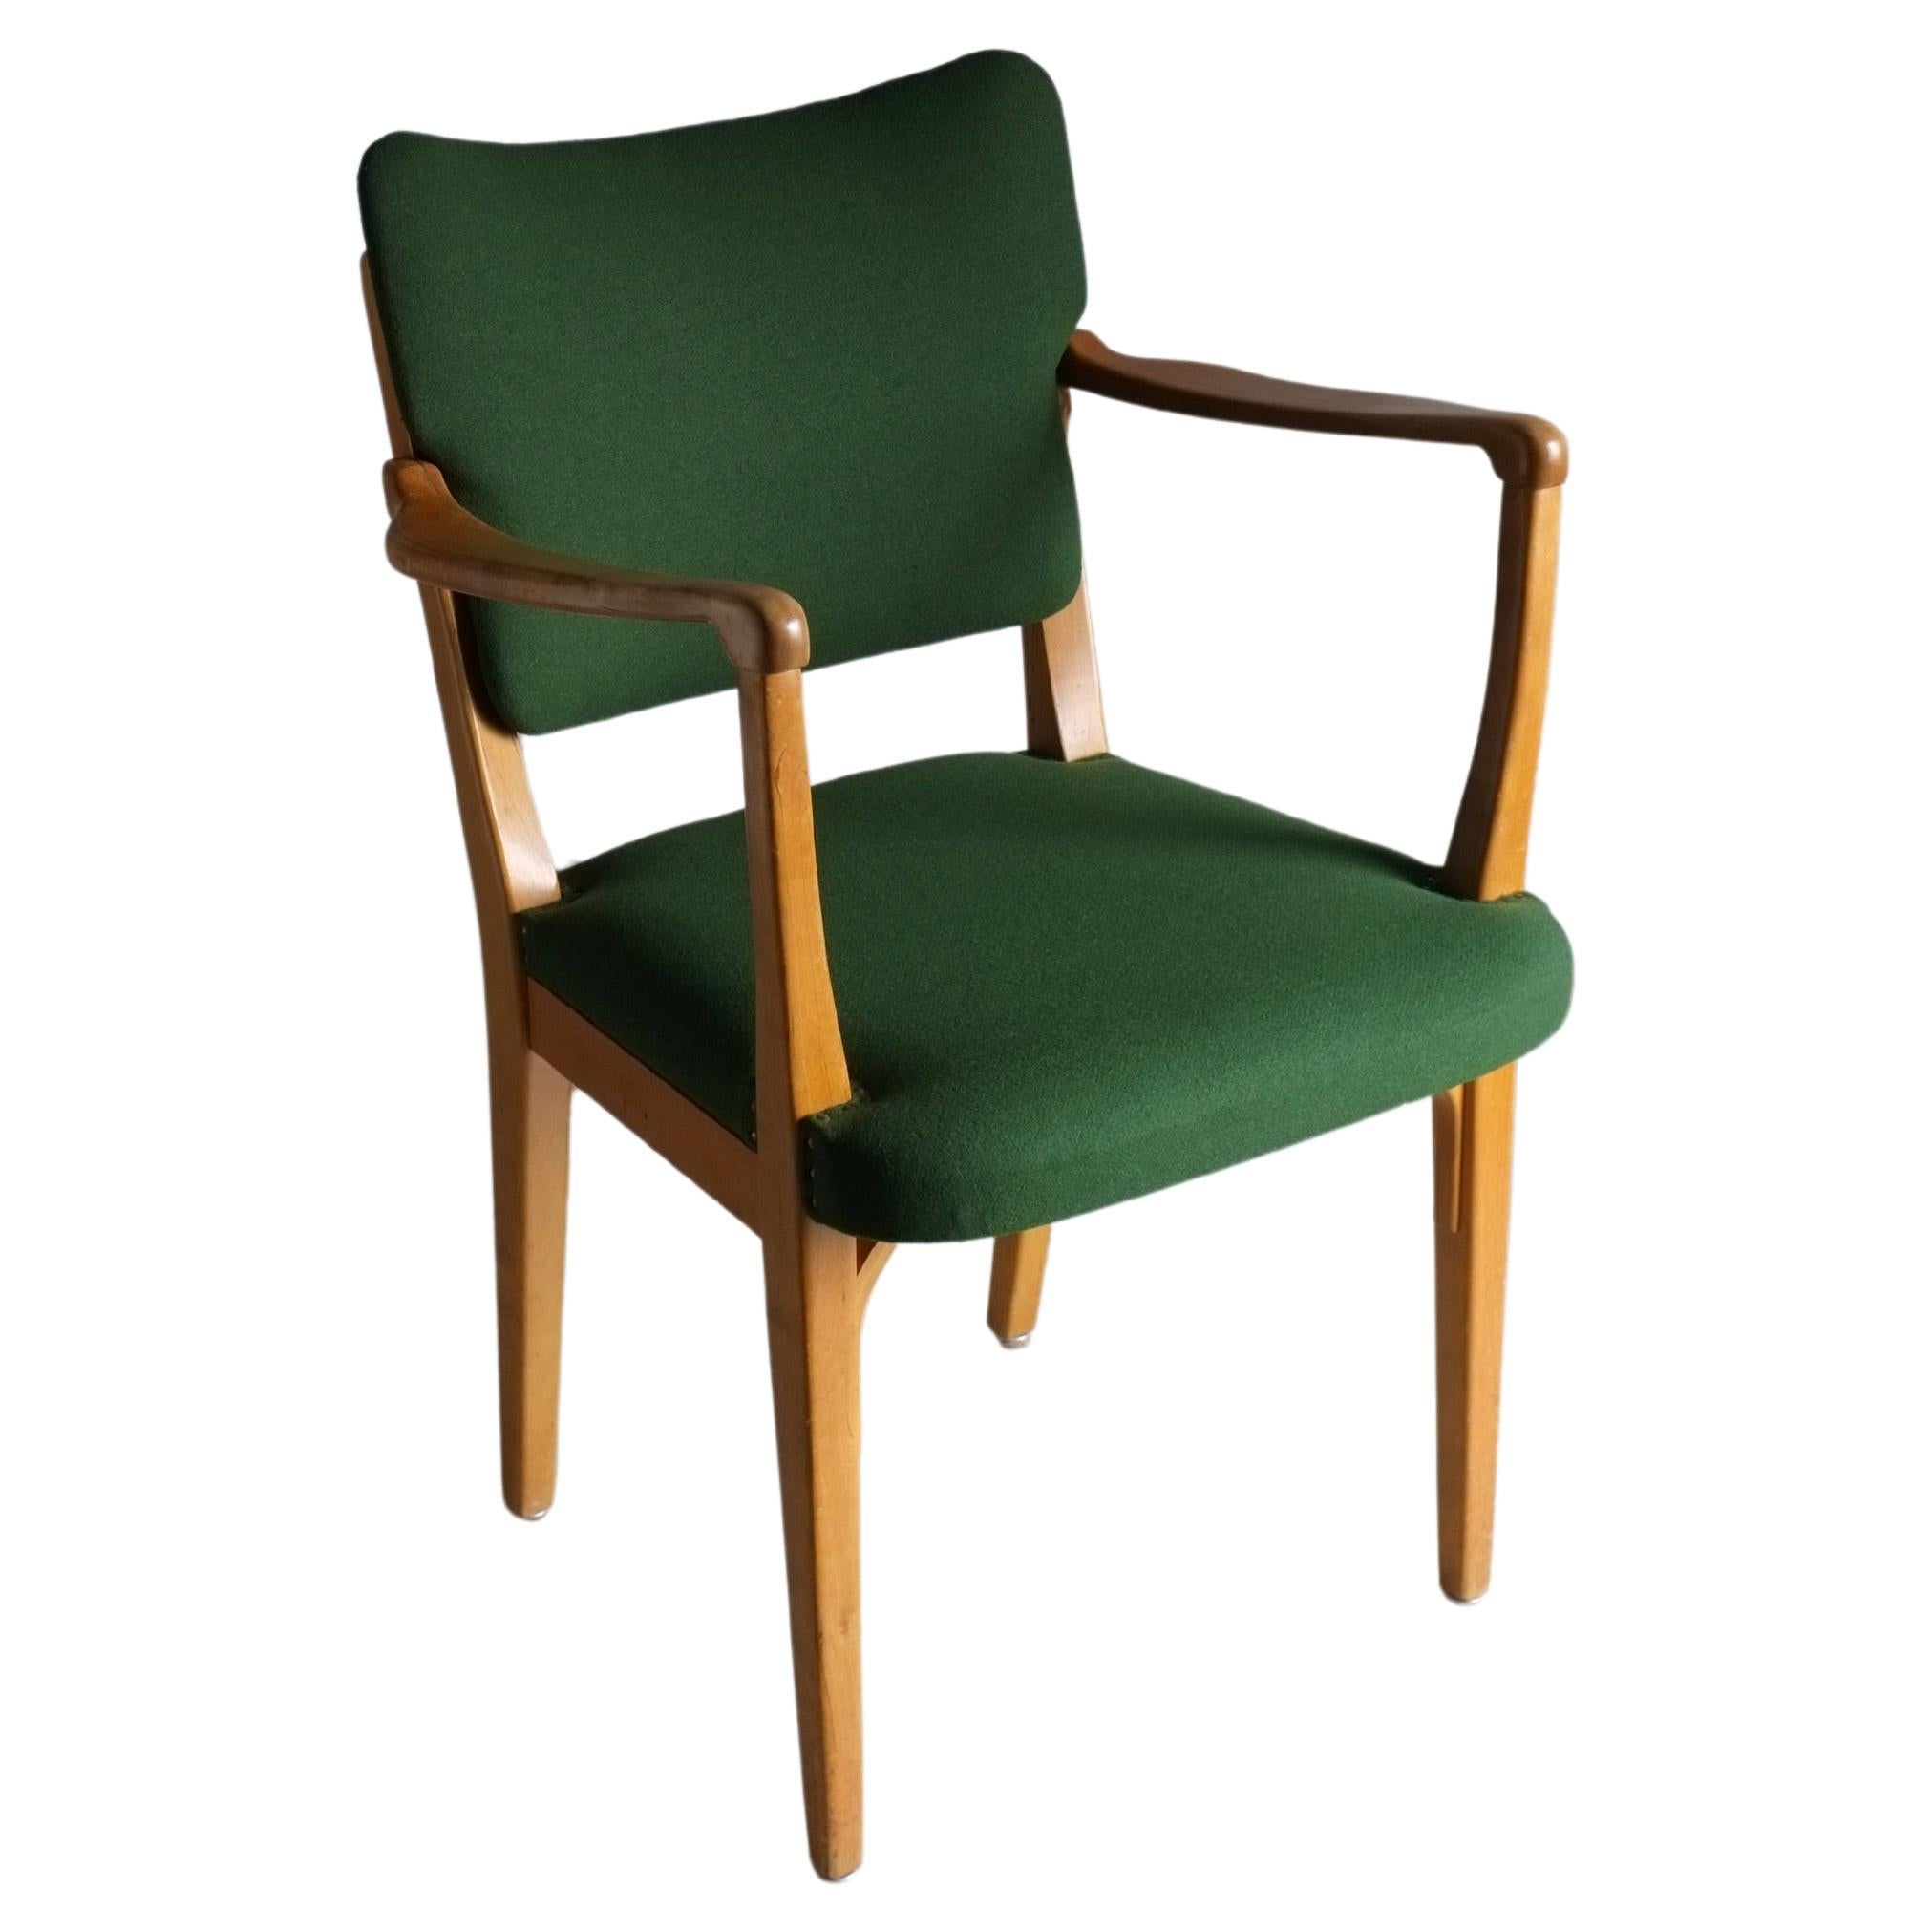 Green Beechwood Armchair, Nordiska Kompaniet, Sweden 1940s For Sale